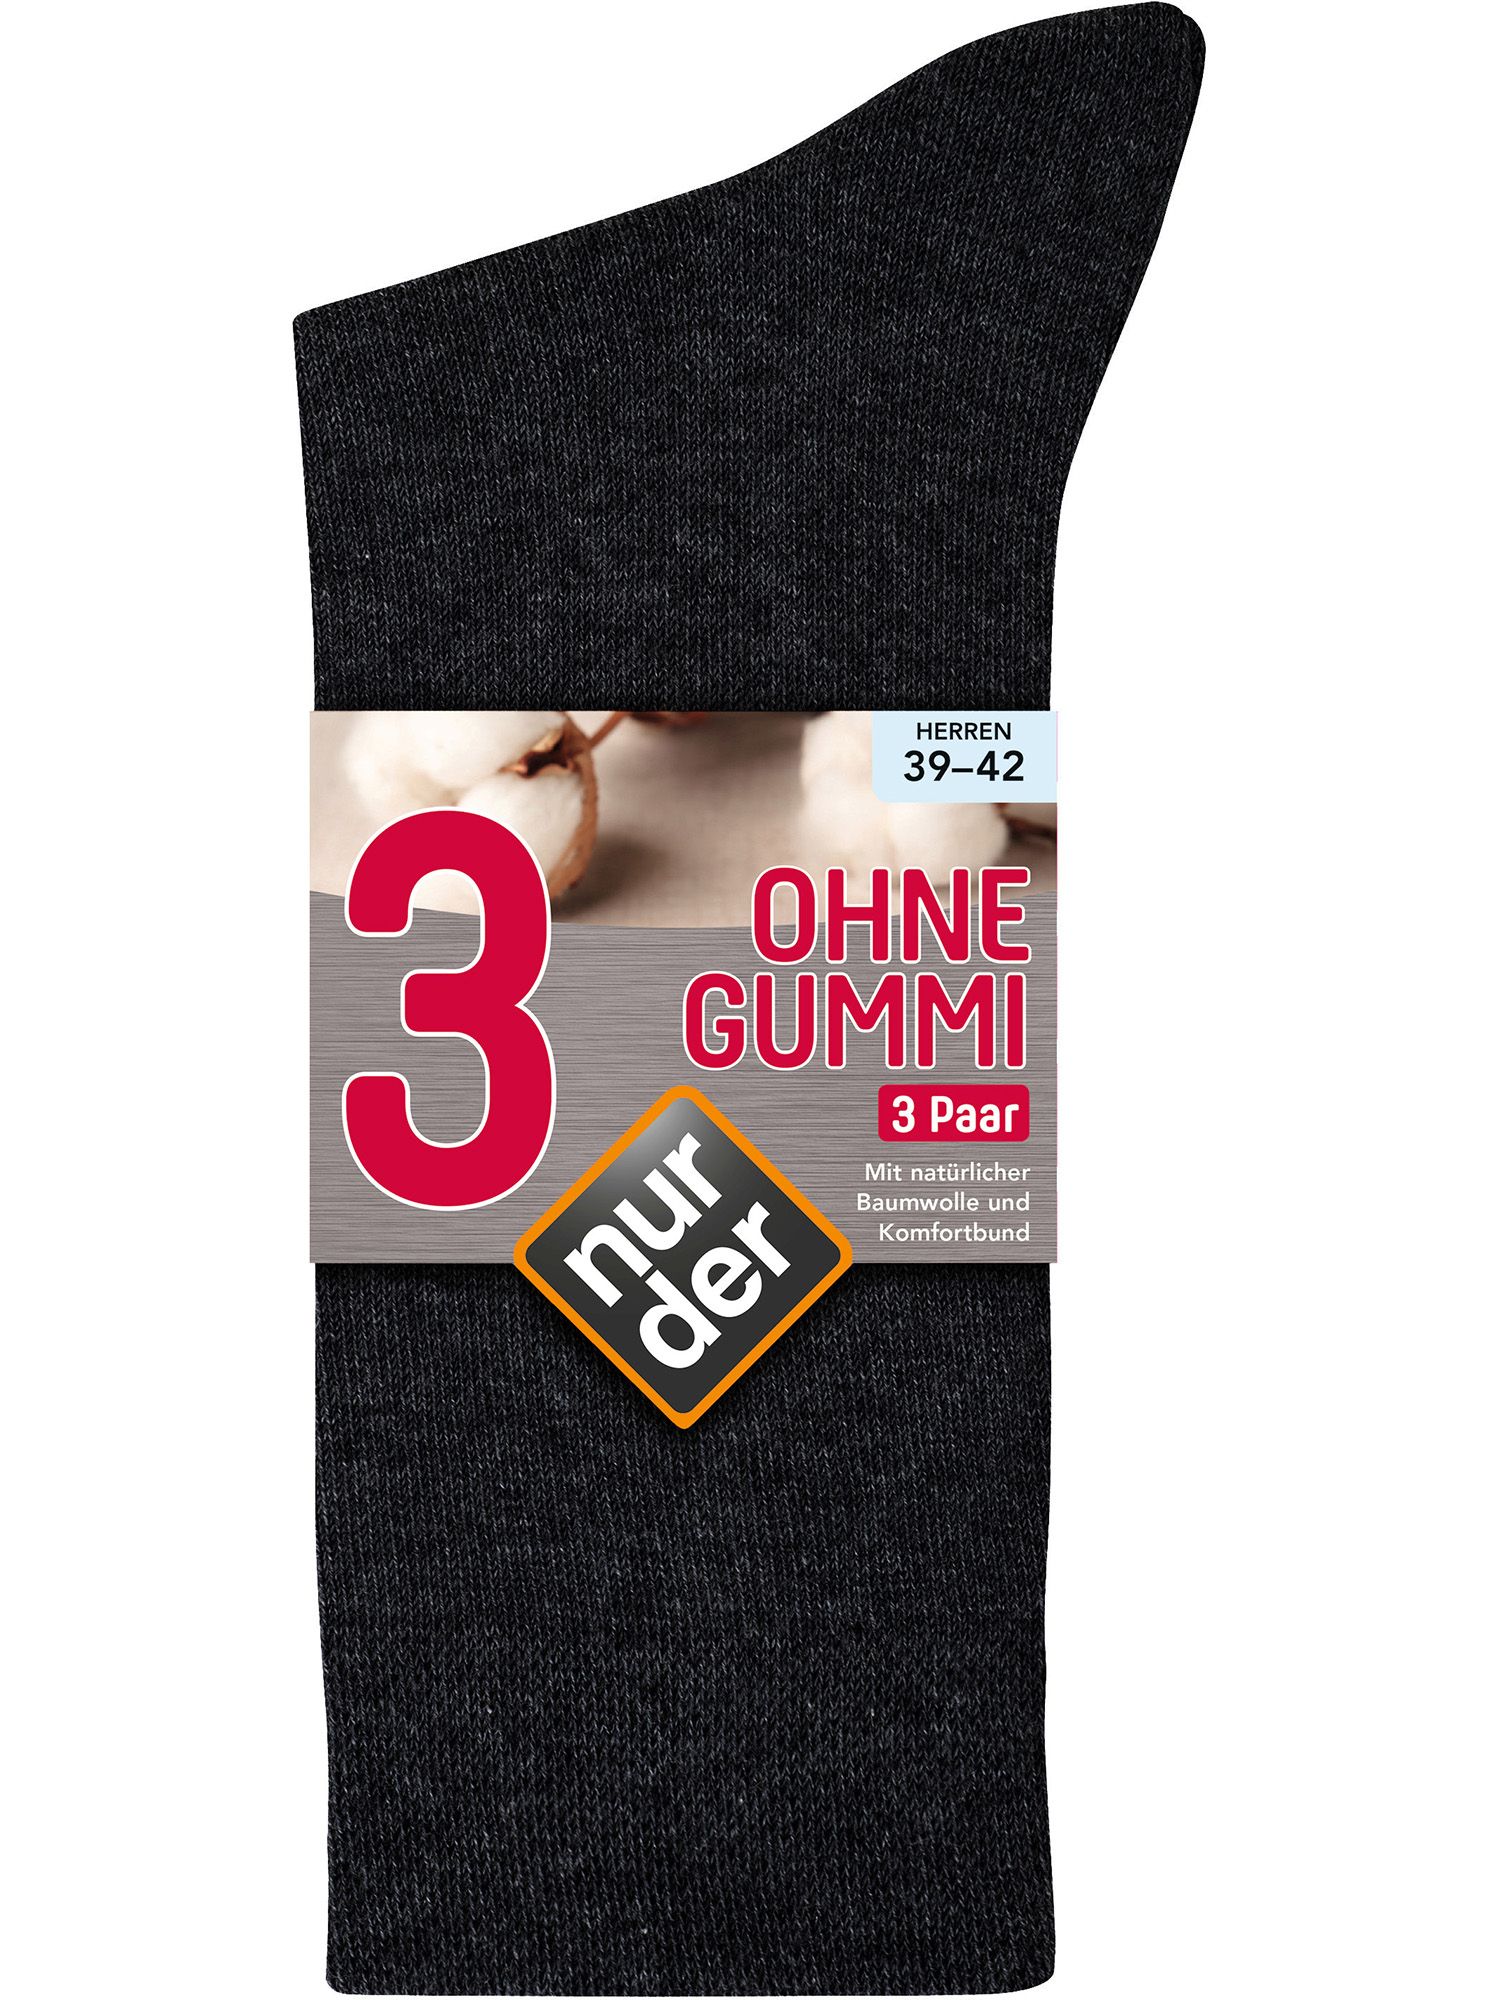 NUR DER Socken Ohne Gummi 3er Pack - schwarz - Größe 39-42